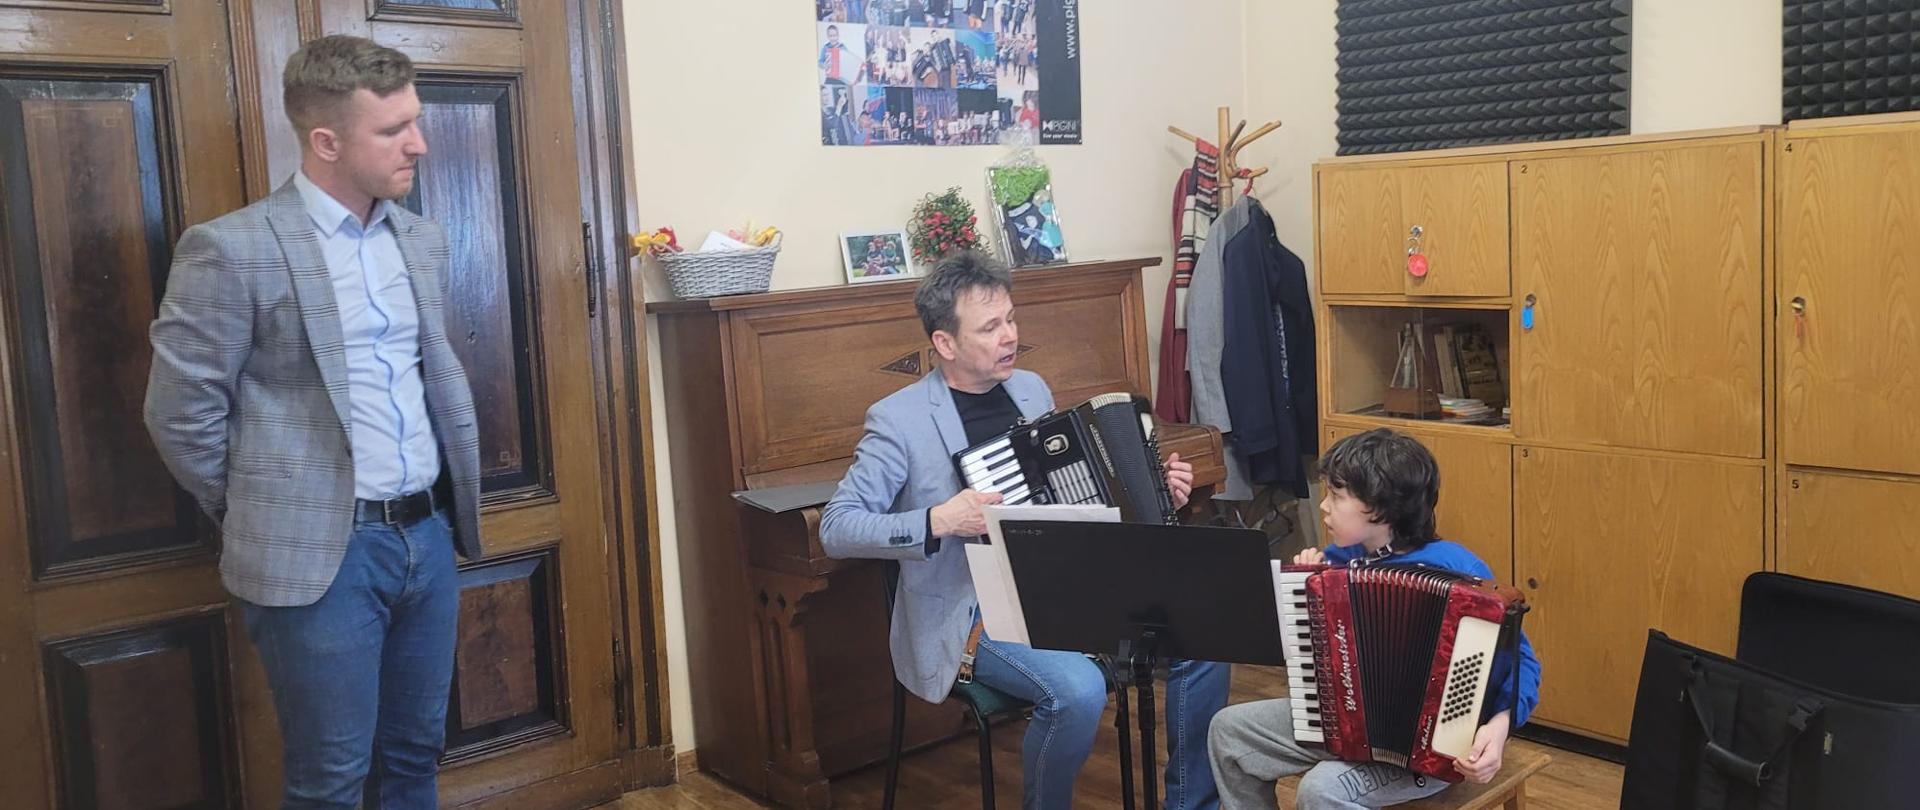 Od lewej stojący nauczyciel z klasy akordeonu P. T. Brusiński, który przygląda się jak prof. Piotr Chołołowicz udziela wskazówek gry na akordeonie uczniowi, oboje siędzą na krzesłach grając na instrumencie